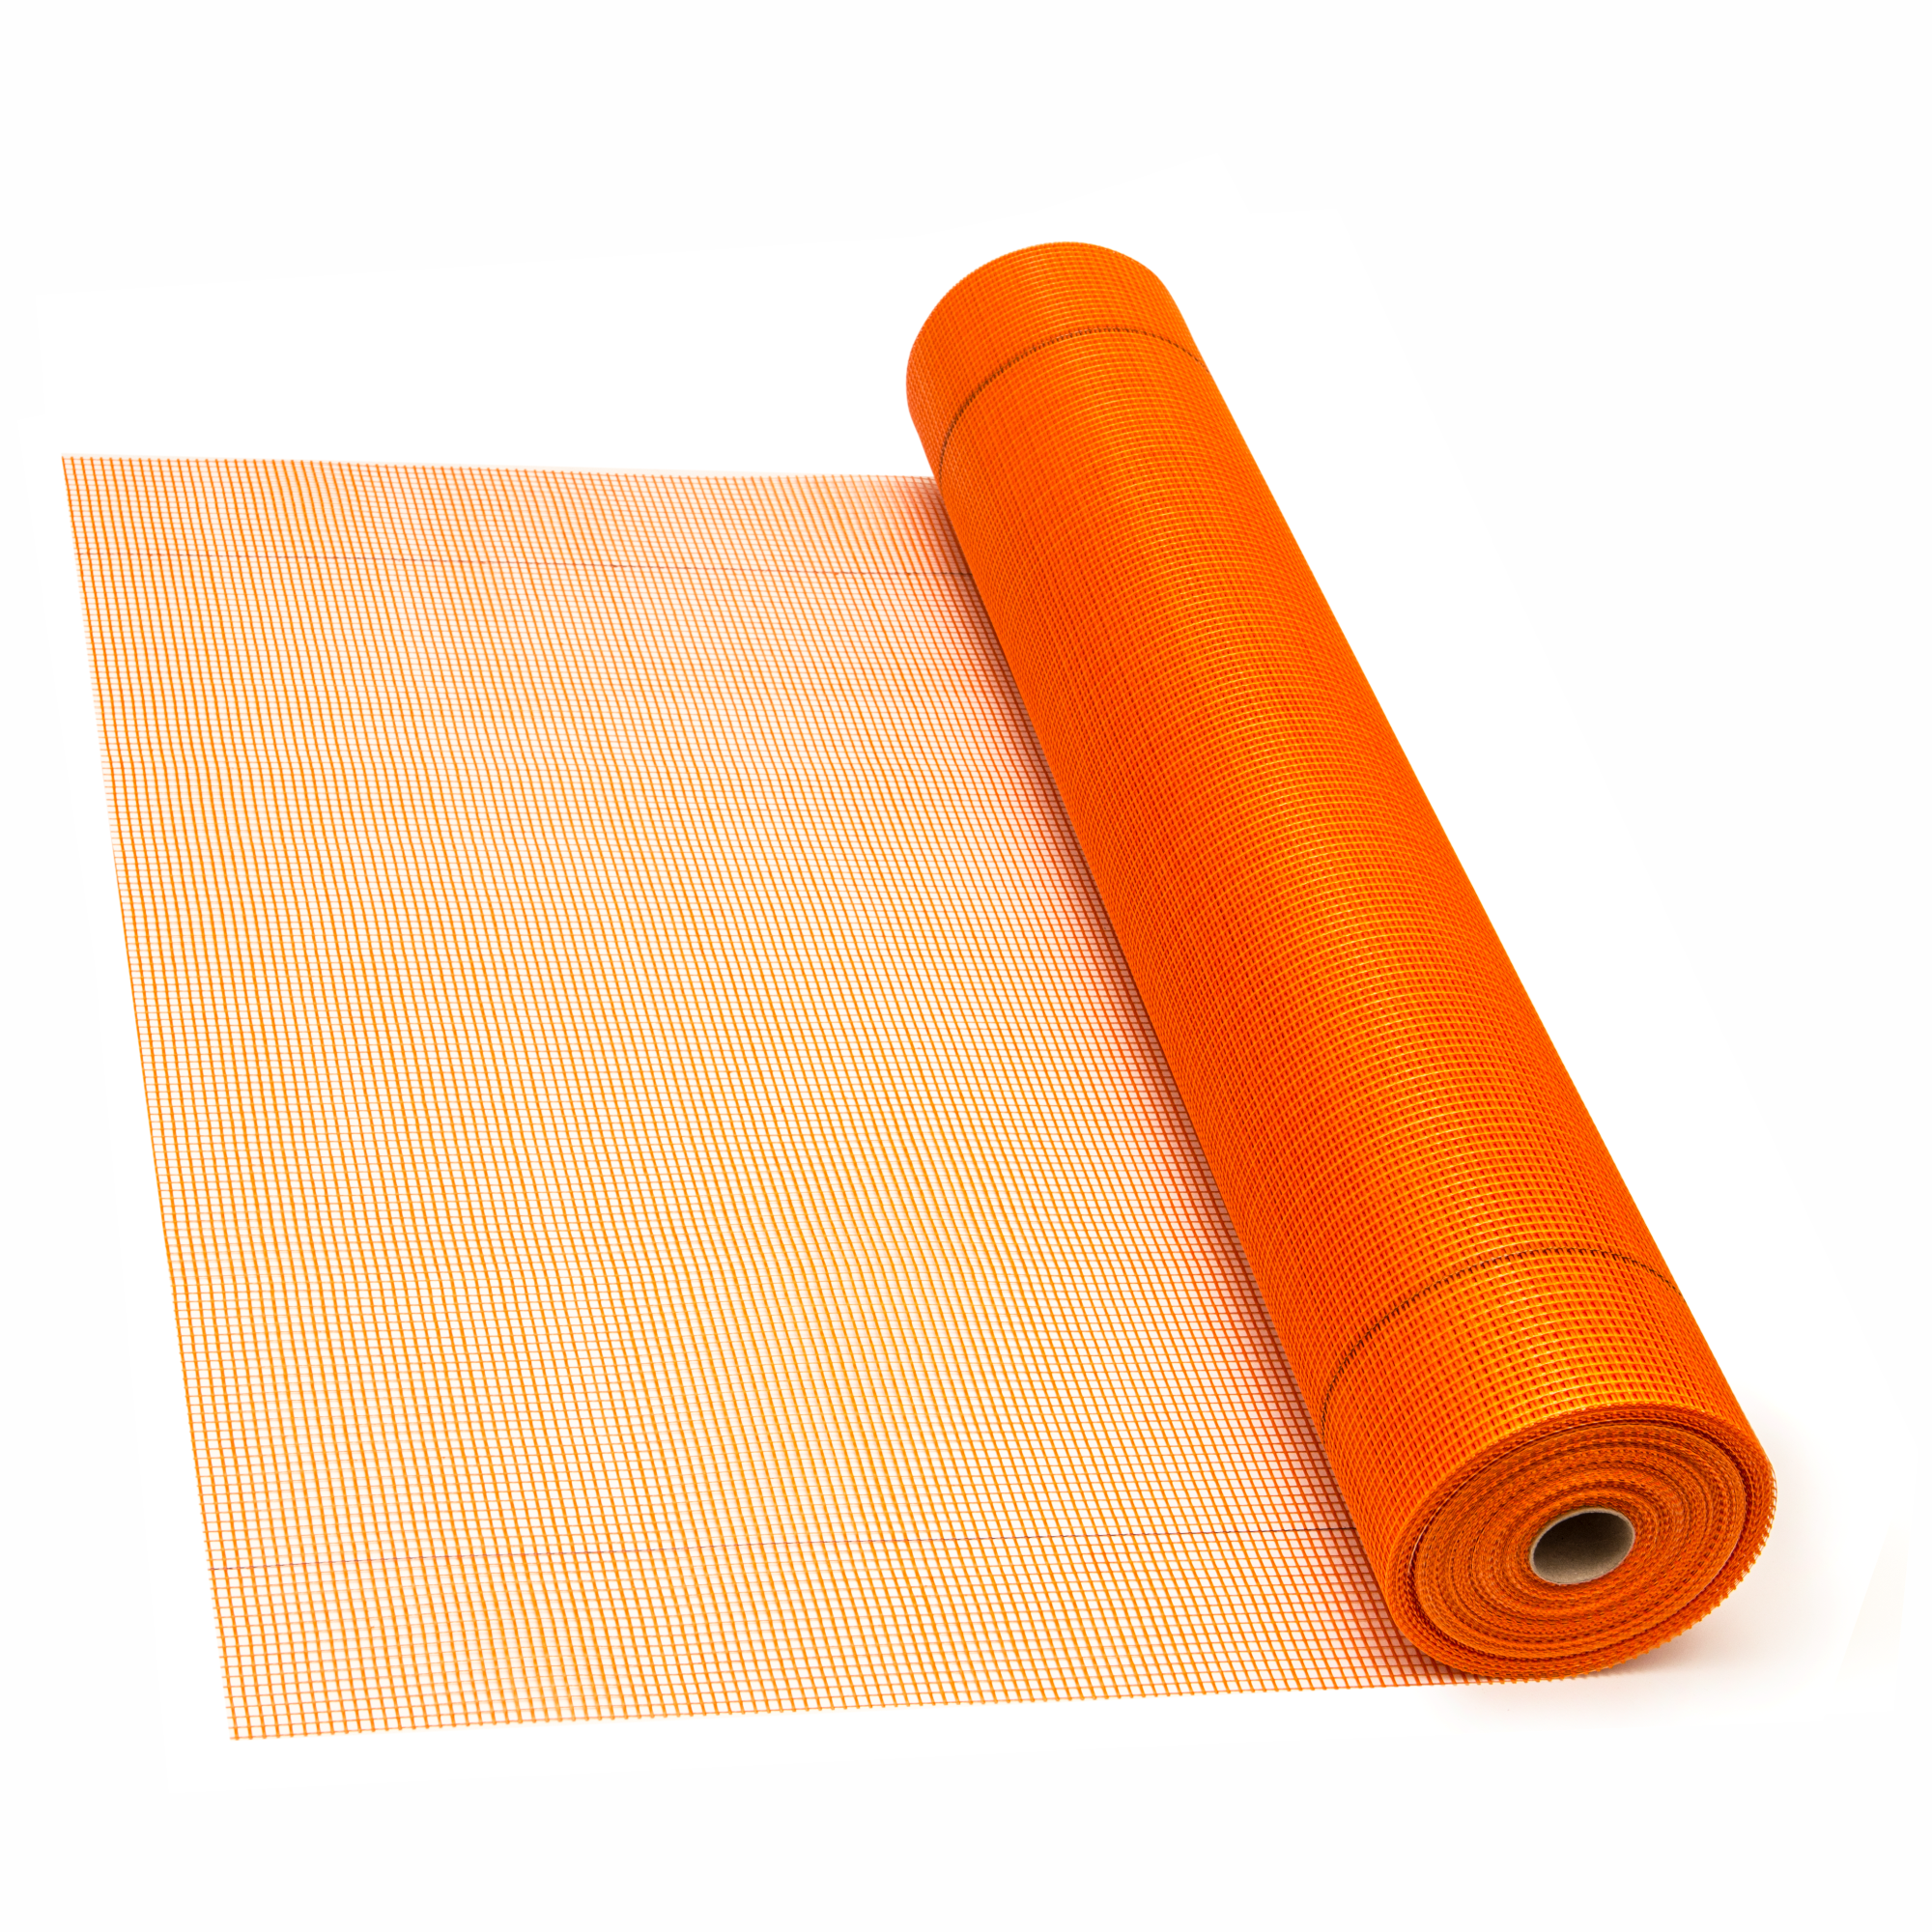 Thermosystem Accessories - Orange Allianz Premium fiberglass mesh 145gsm 50mp, https:maxbau.ro